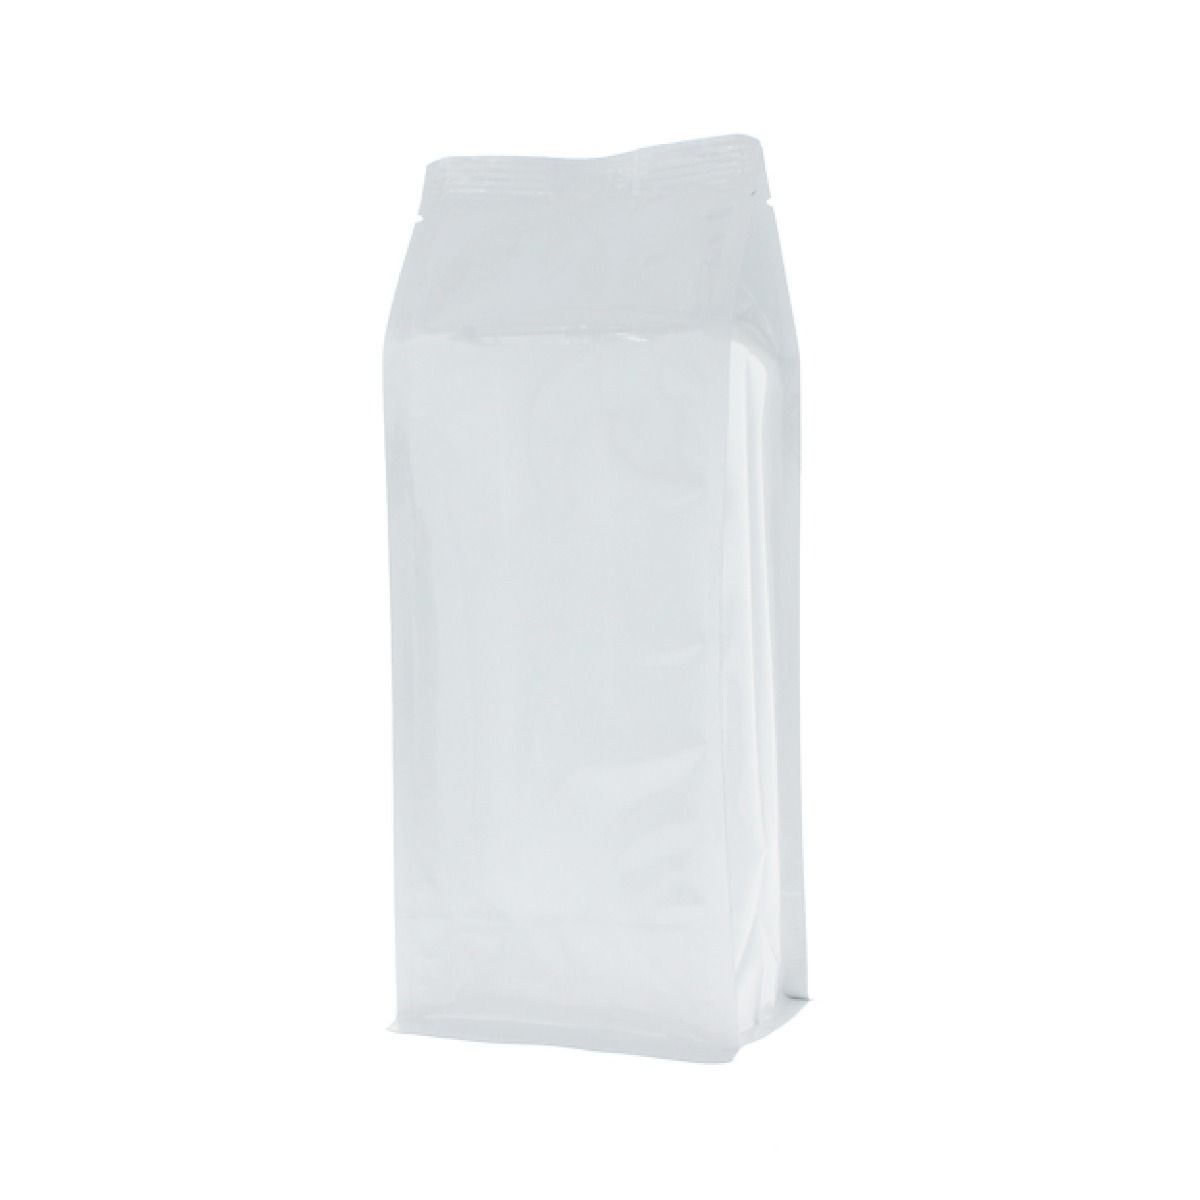 Flat bottom pouch - shiny white